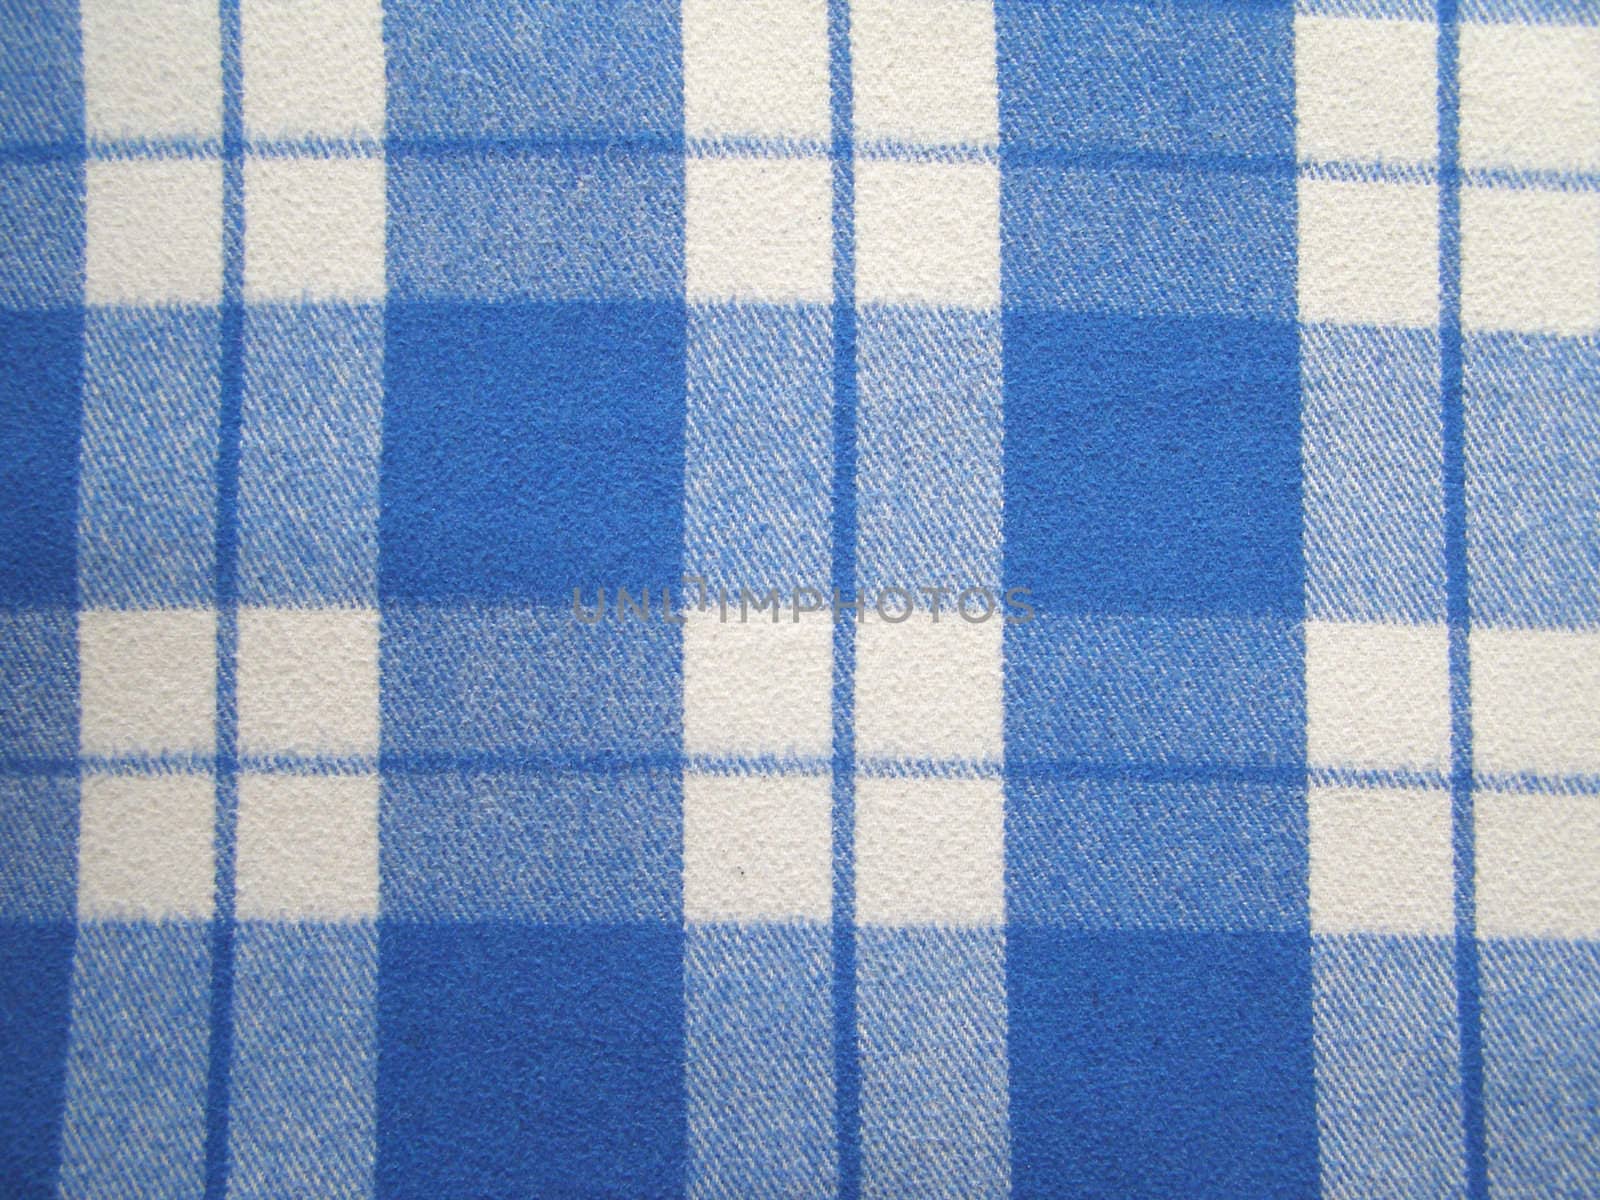 Blue and white checks fabric